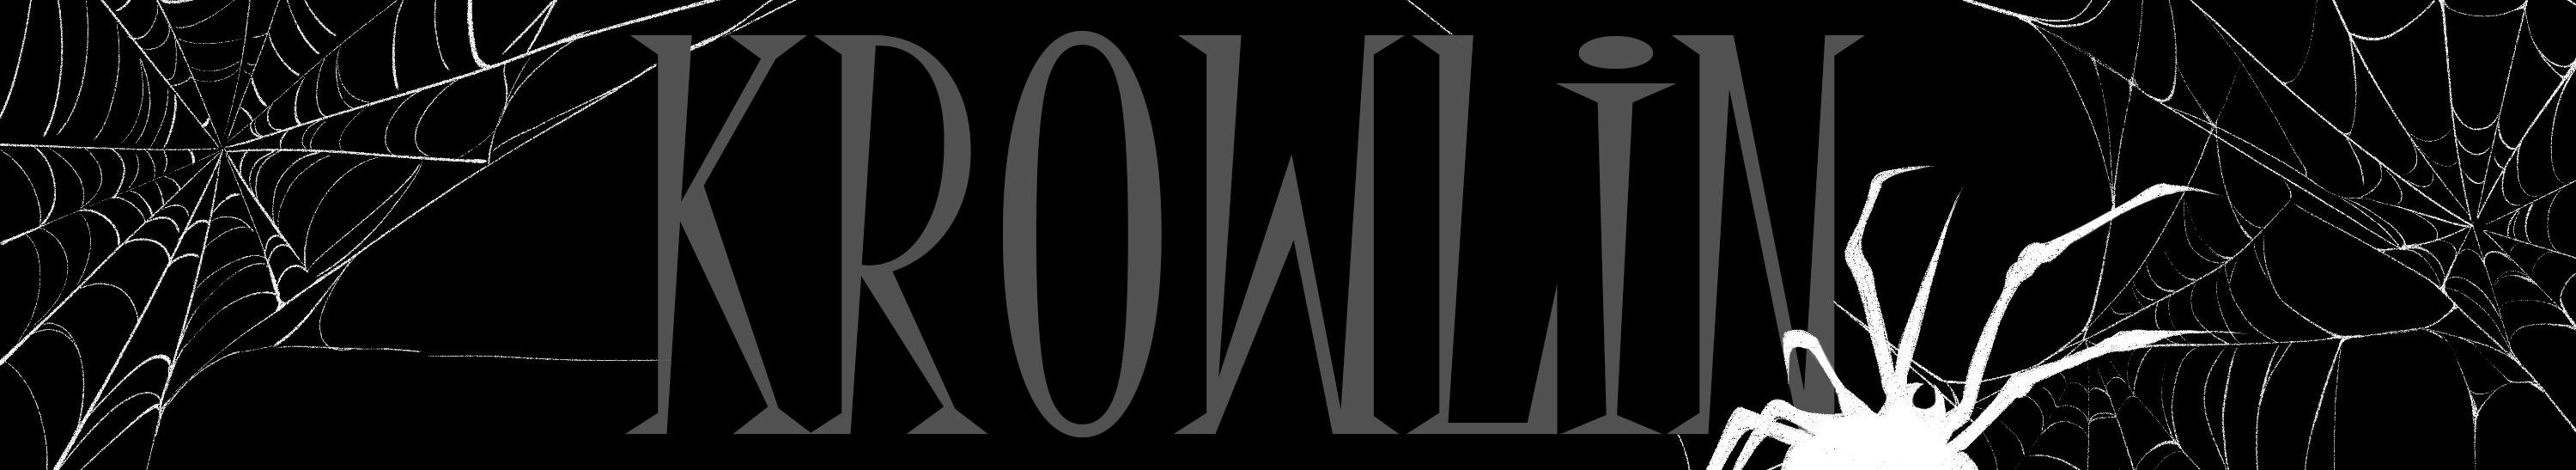 Misha Krowlin profil başlığı